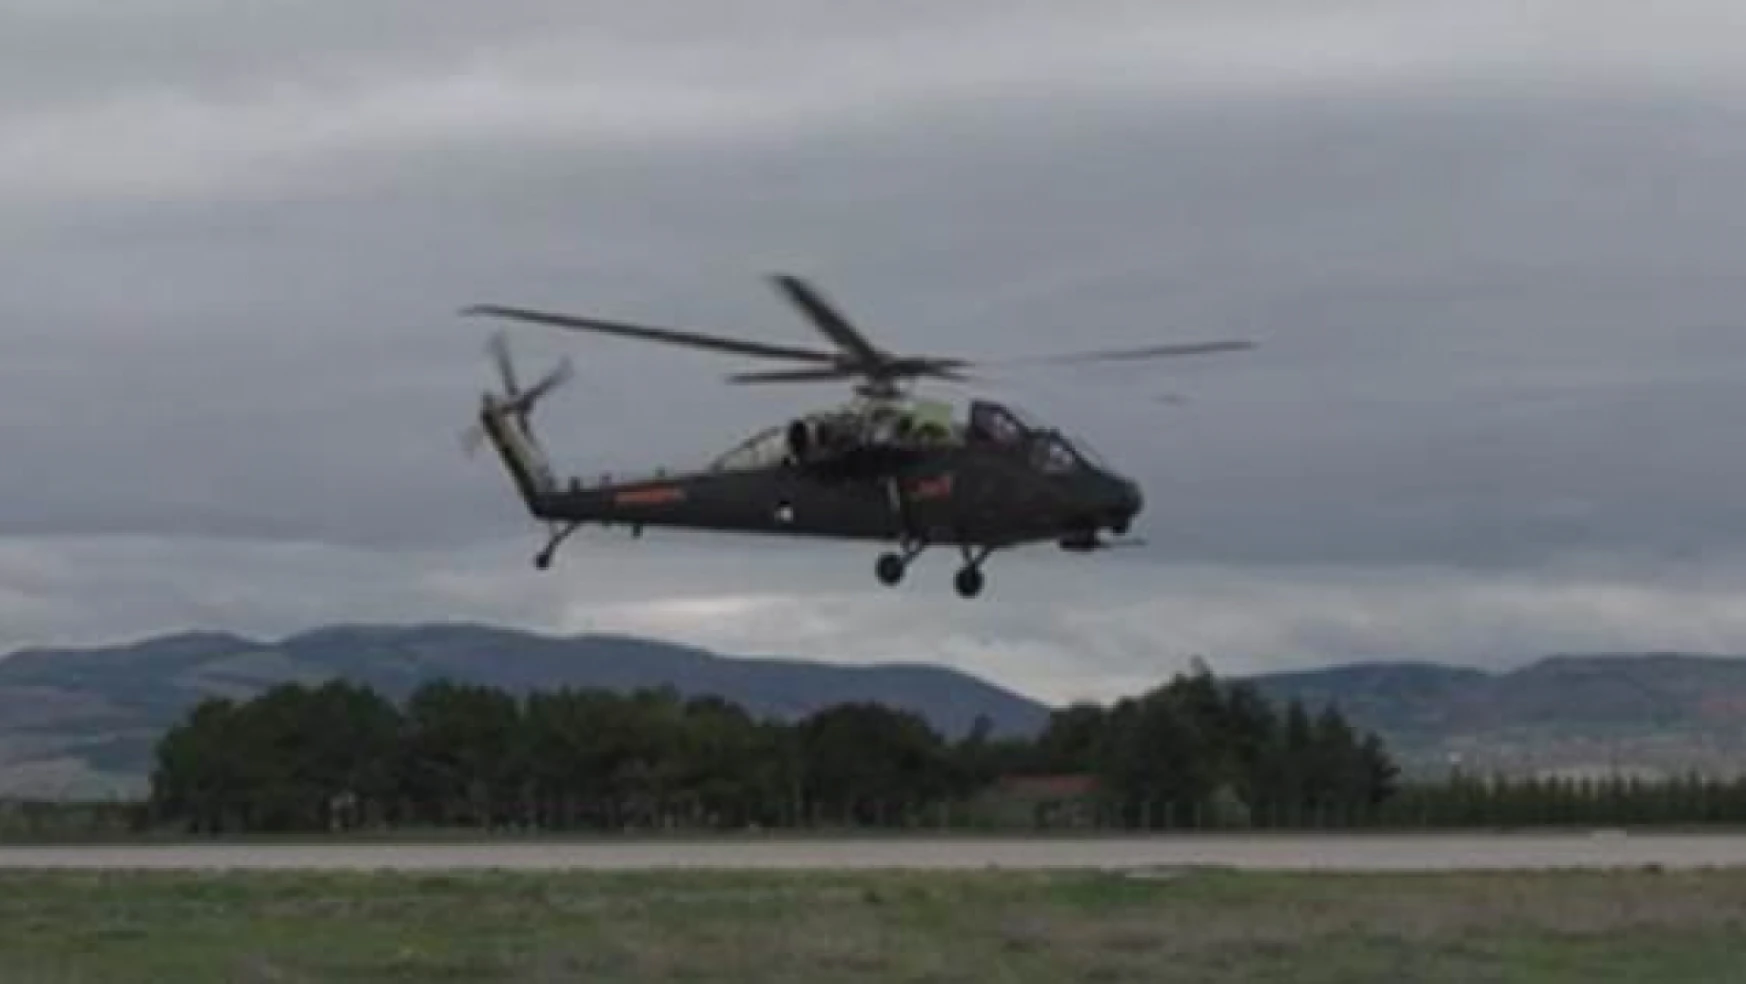 Ağır sınıf taarruz helikopteri ATAK-2 ilk kez havalandı